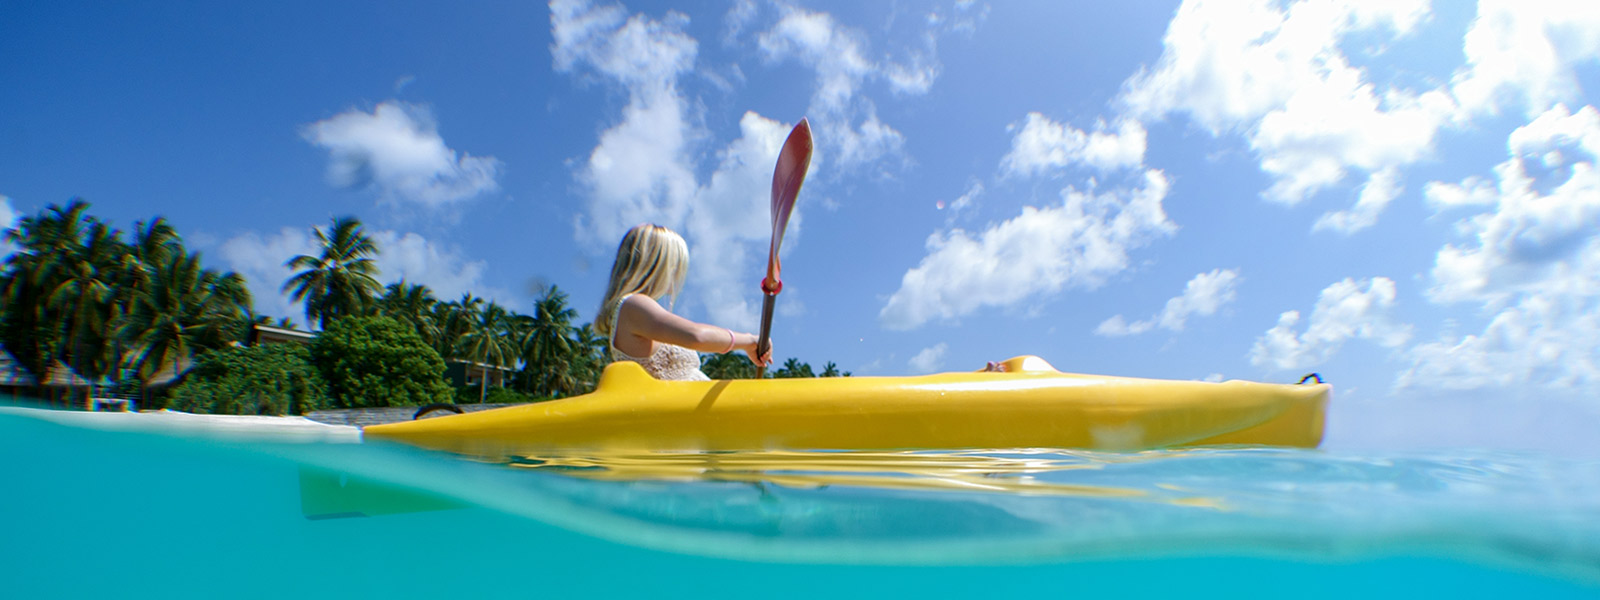 Maldives Water Sports Kayaking